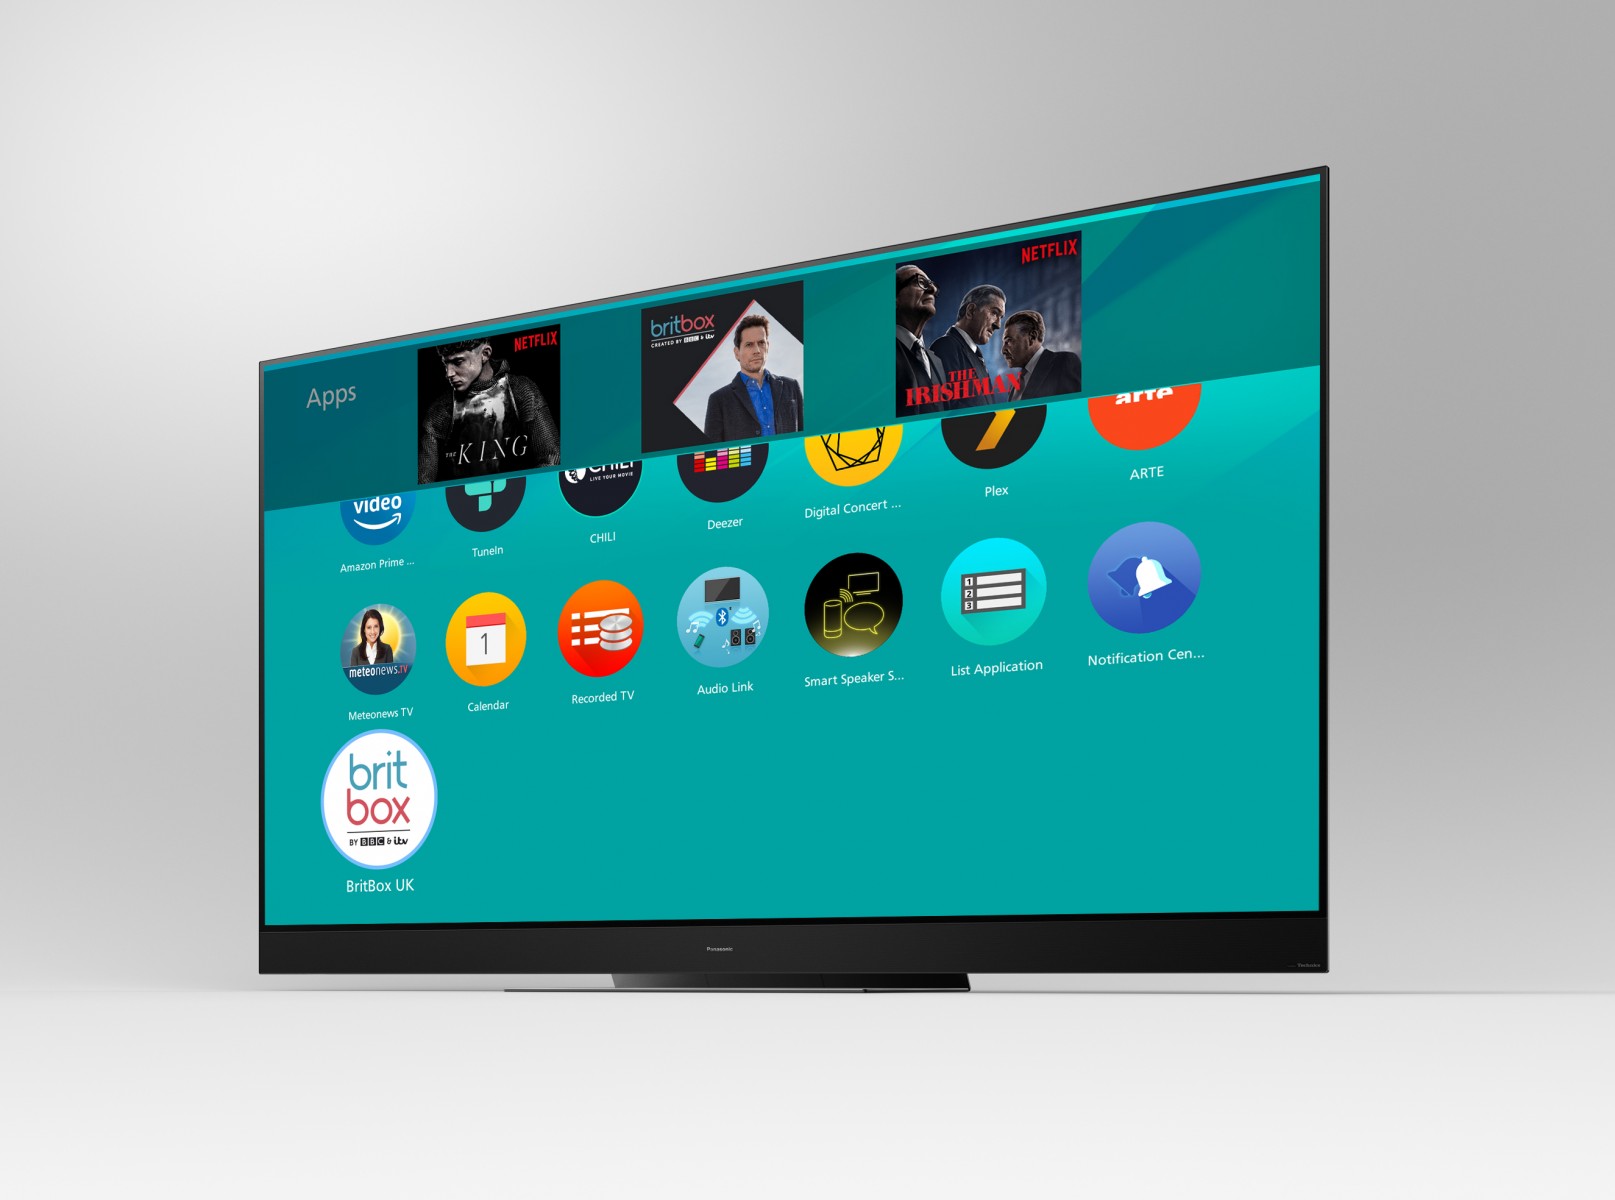 Panasonic’s premium range of televisions will feature the BritBox app